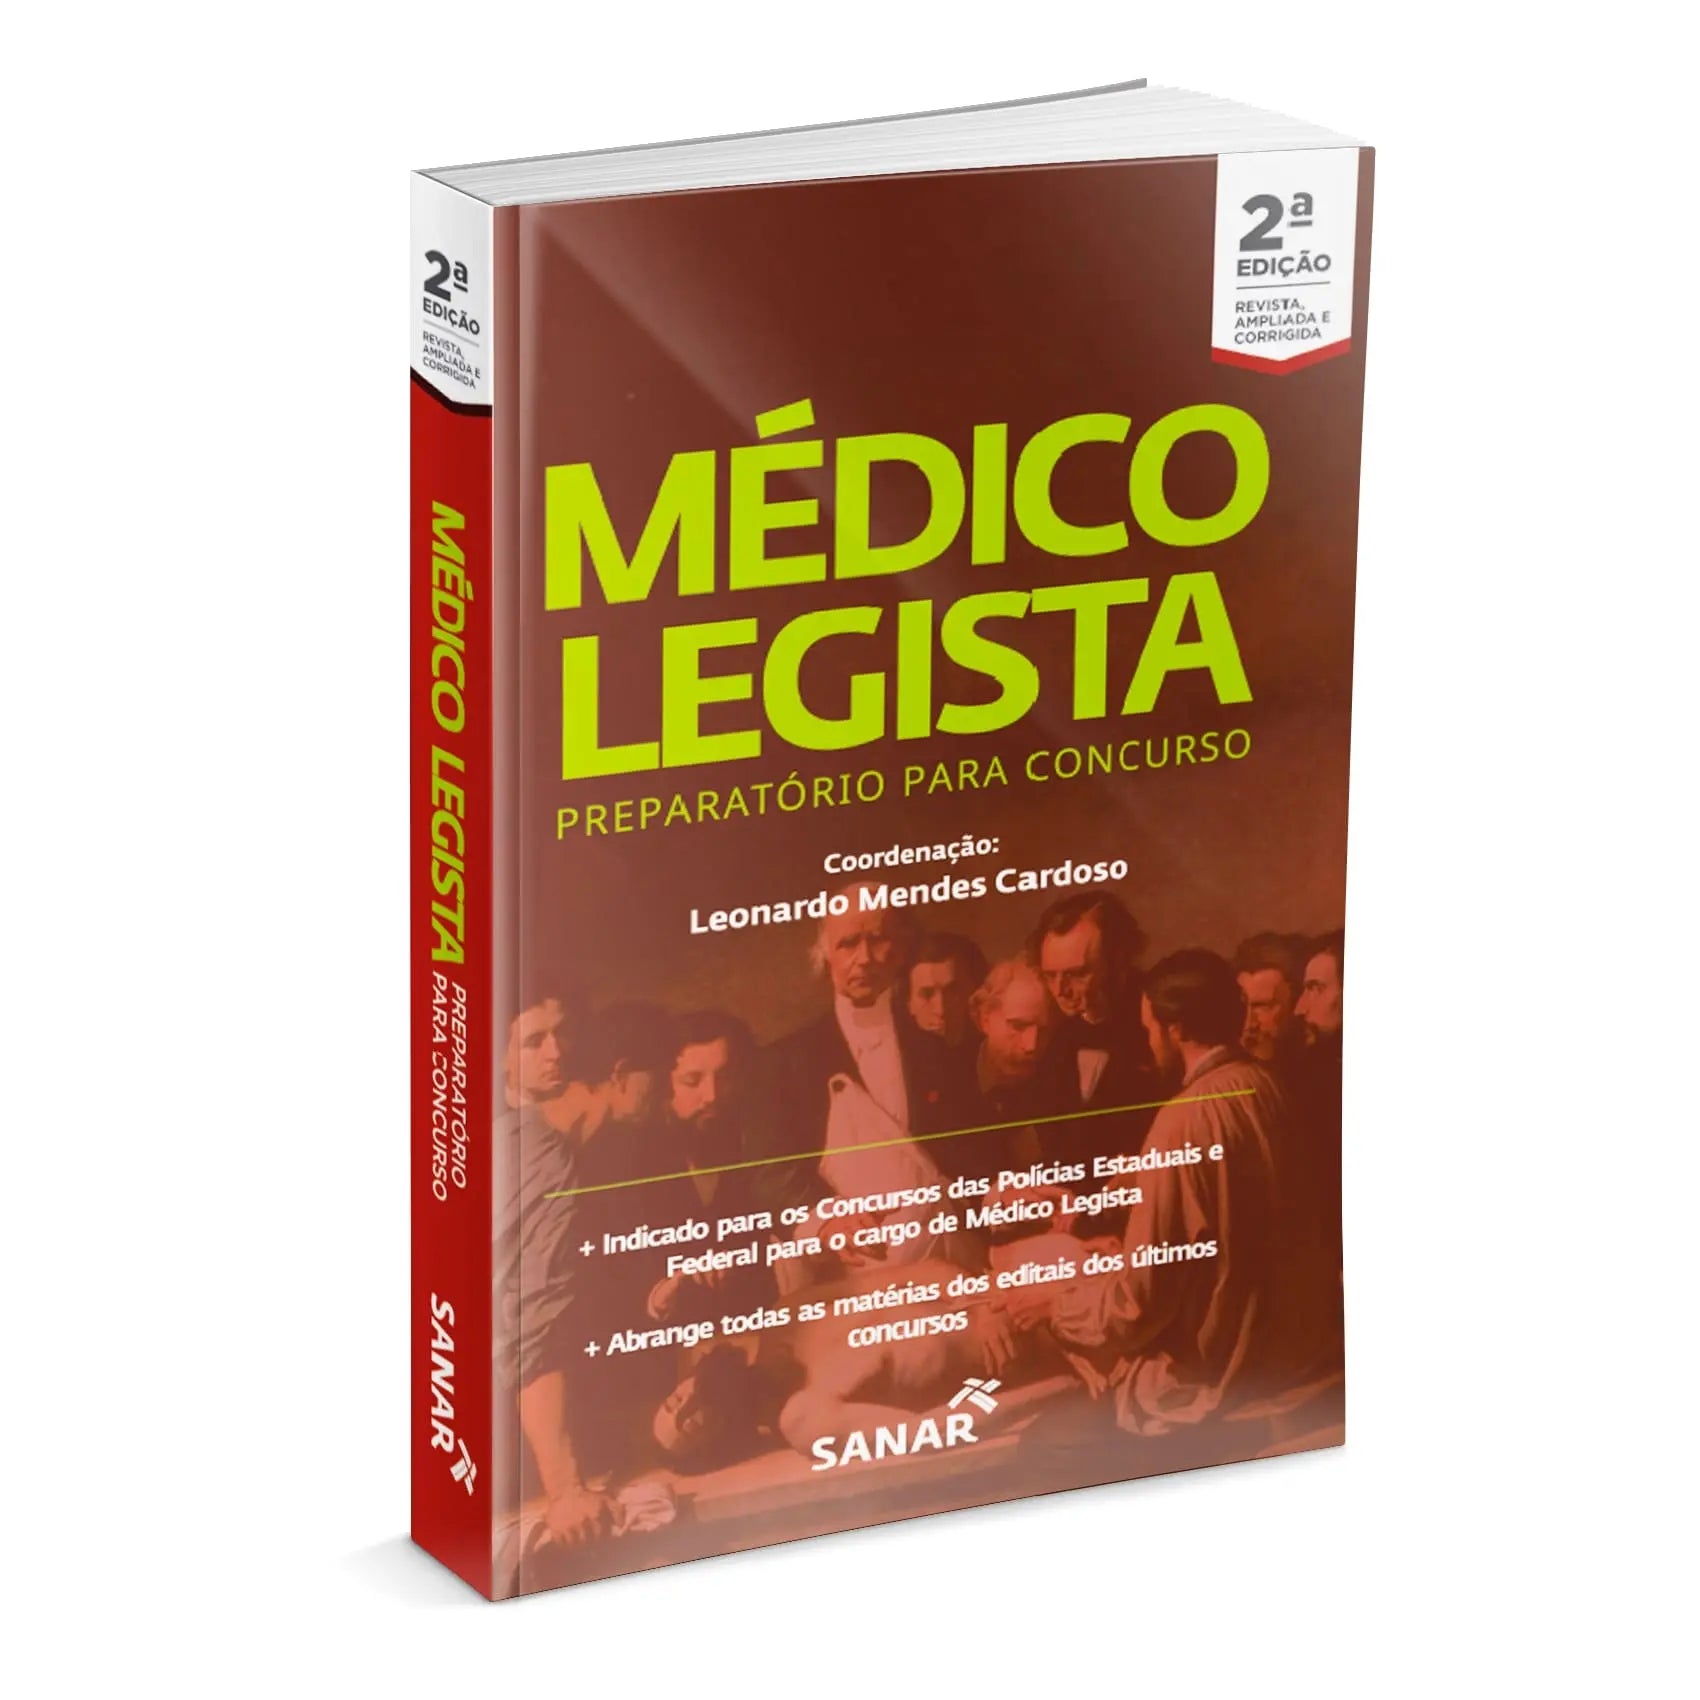 Imagem do livro Médico Legista: Preparatório para Concursos - 2ª Edição